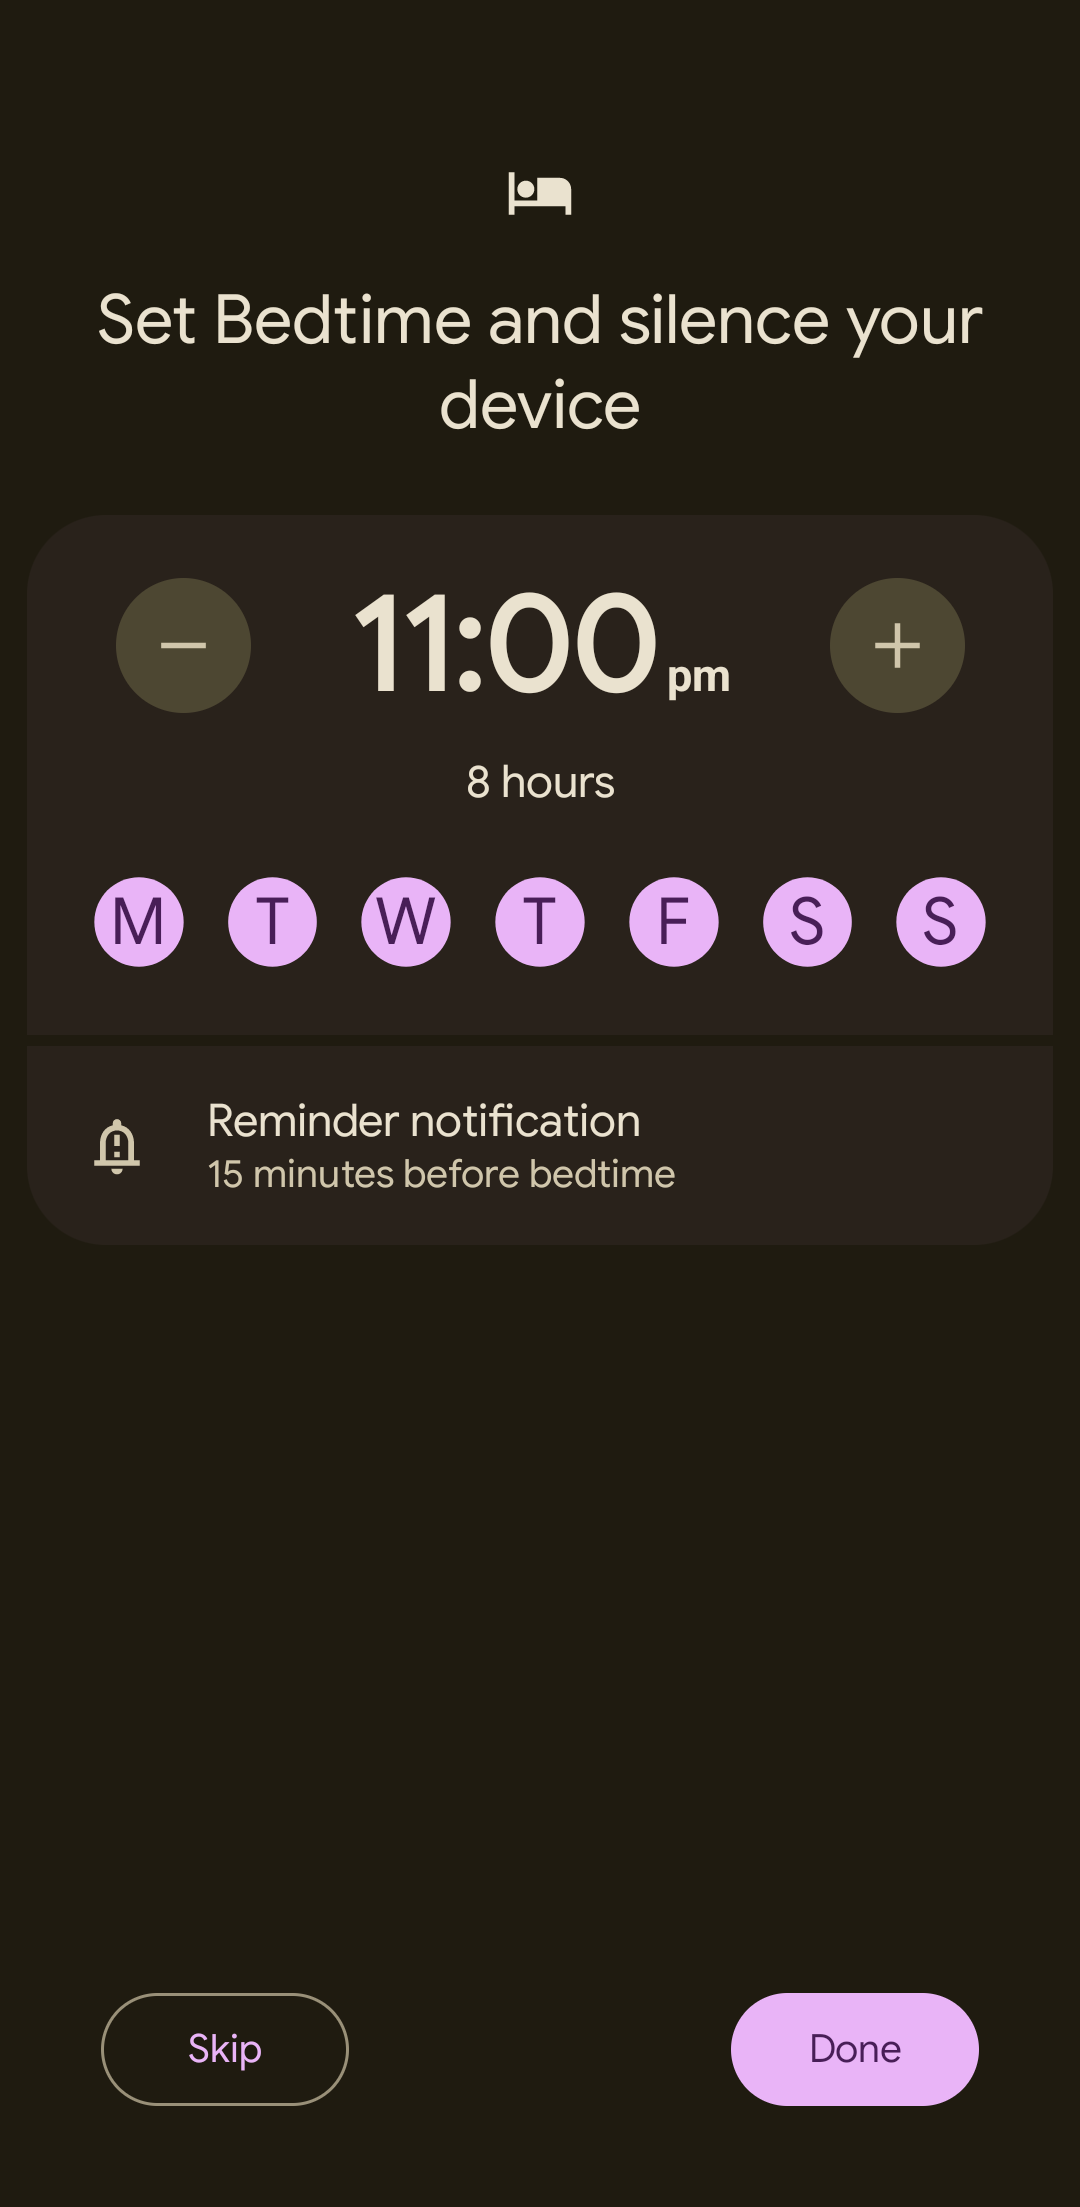 Captura de tela do app Google Clock mostrando as configurações do alarme para dormir